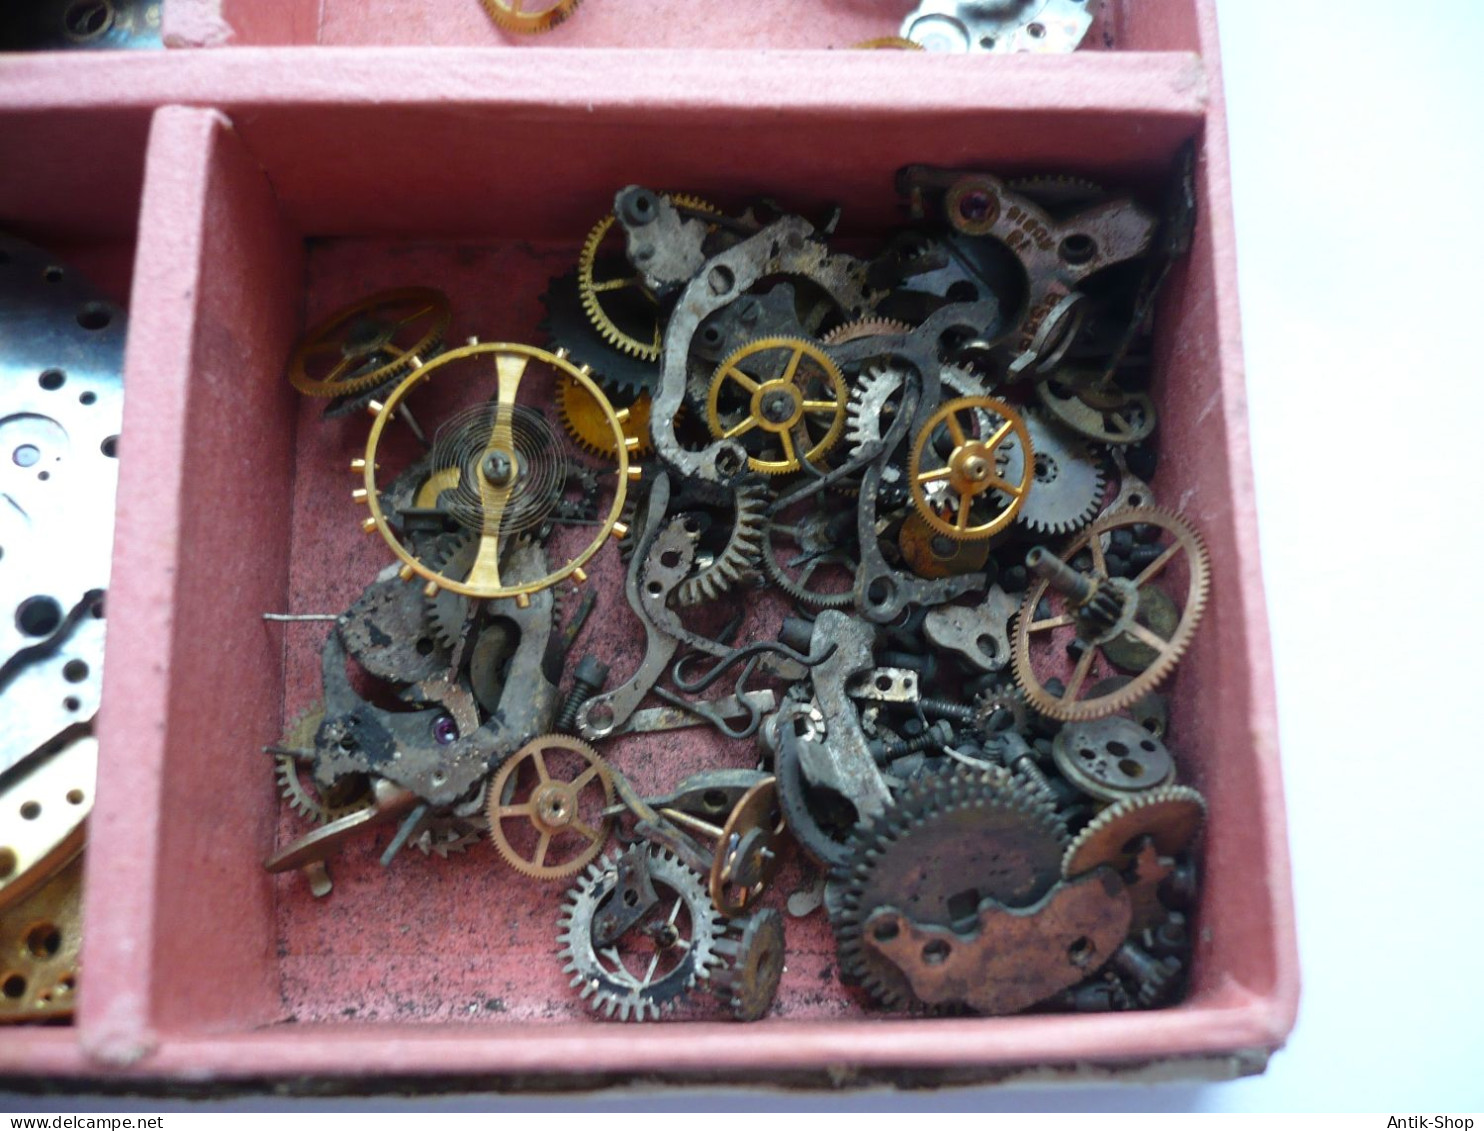 DOXA - Karton Mit Bauteilen Für Uhren - älter (1070) - Materiales